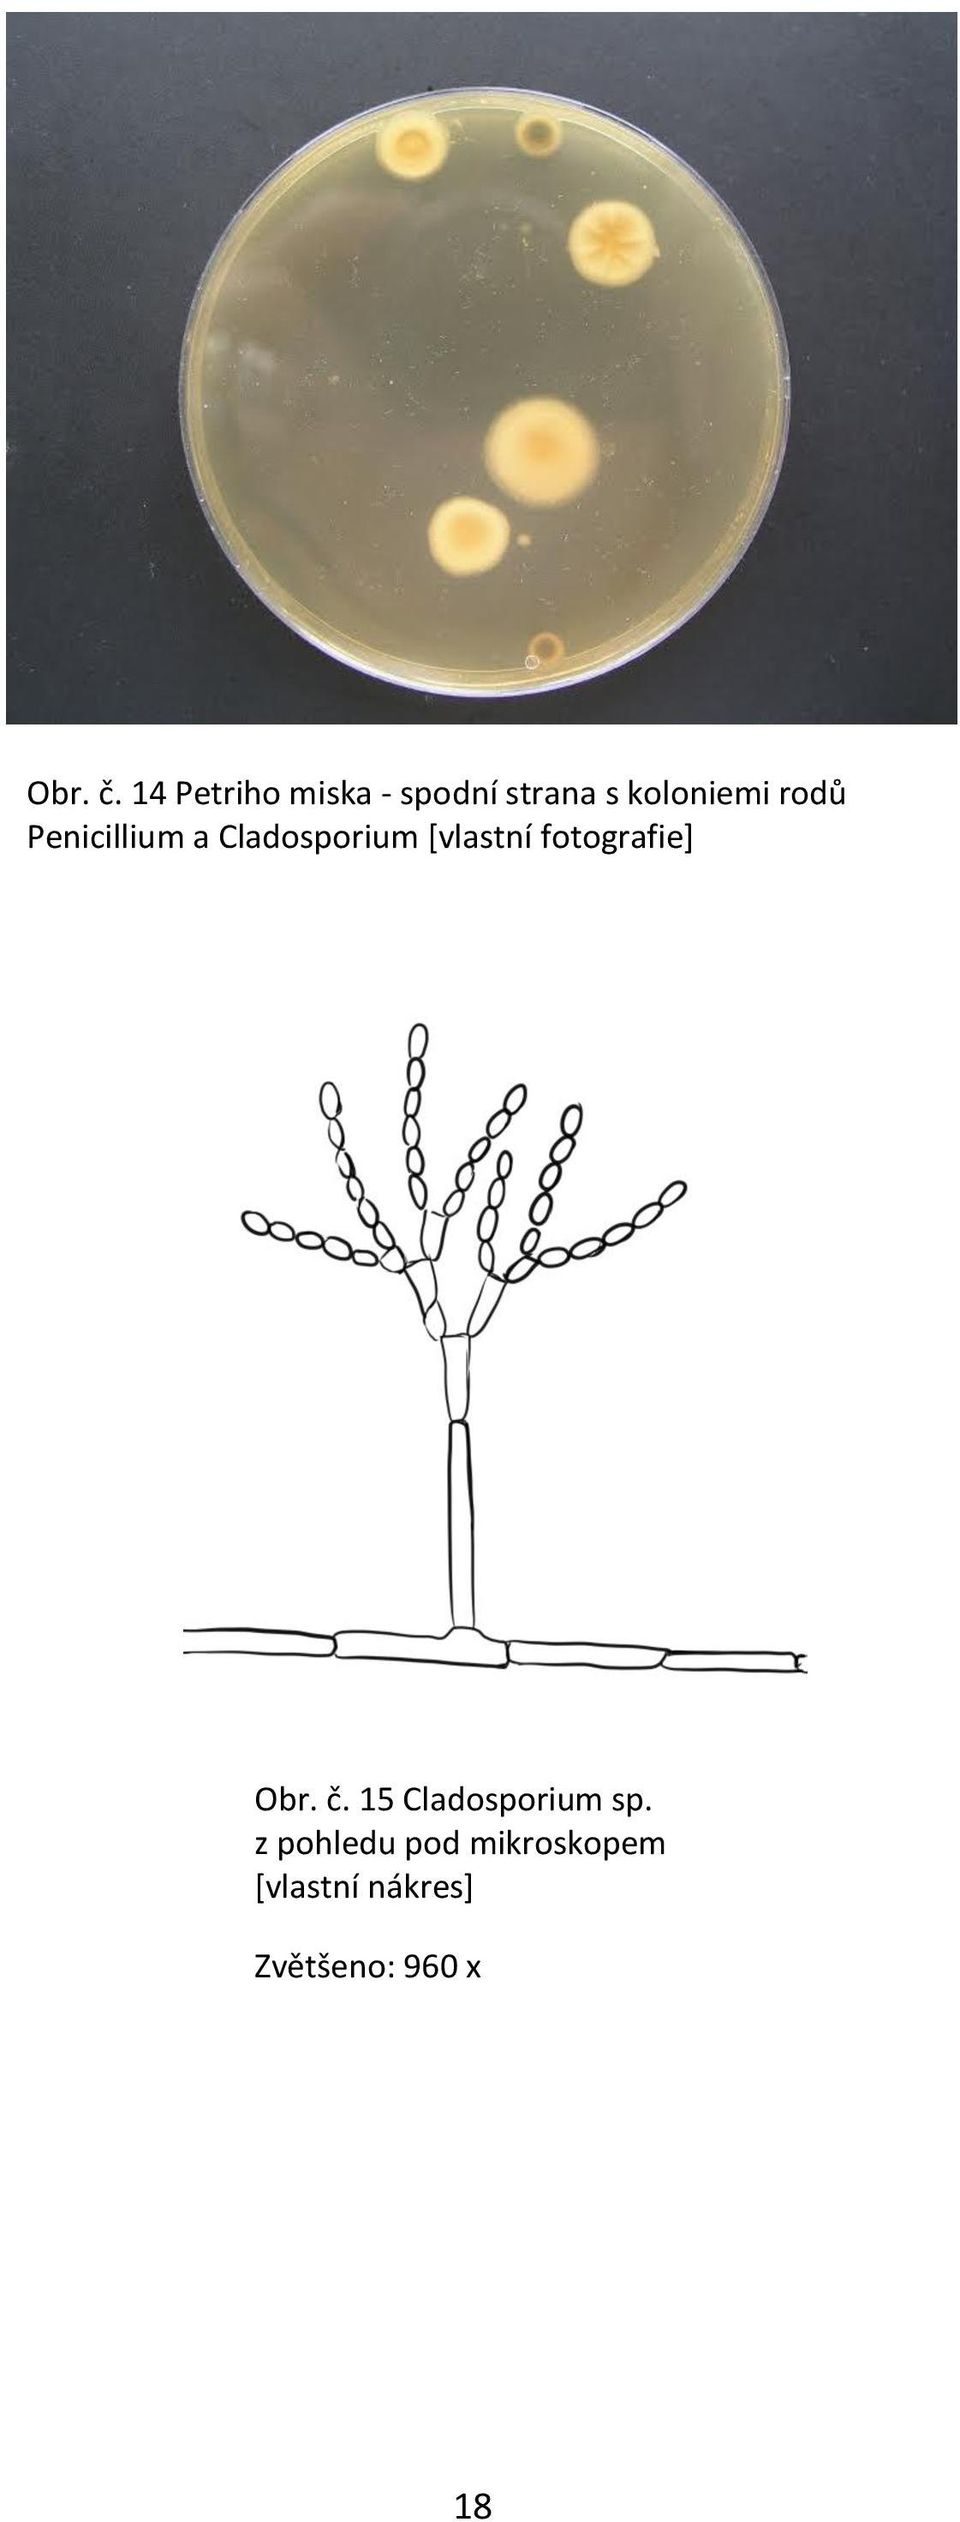 rodů Penicillium a Cladosporium *vlastní